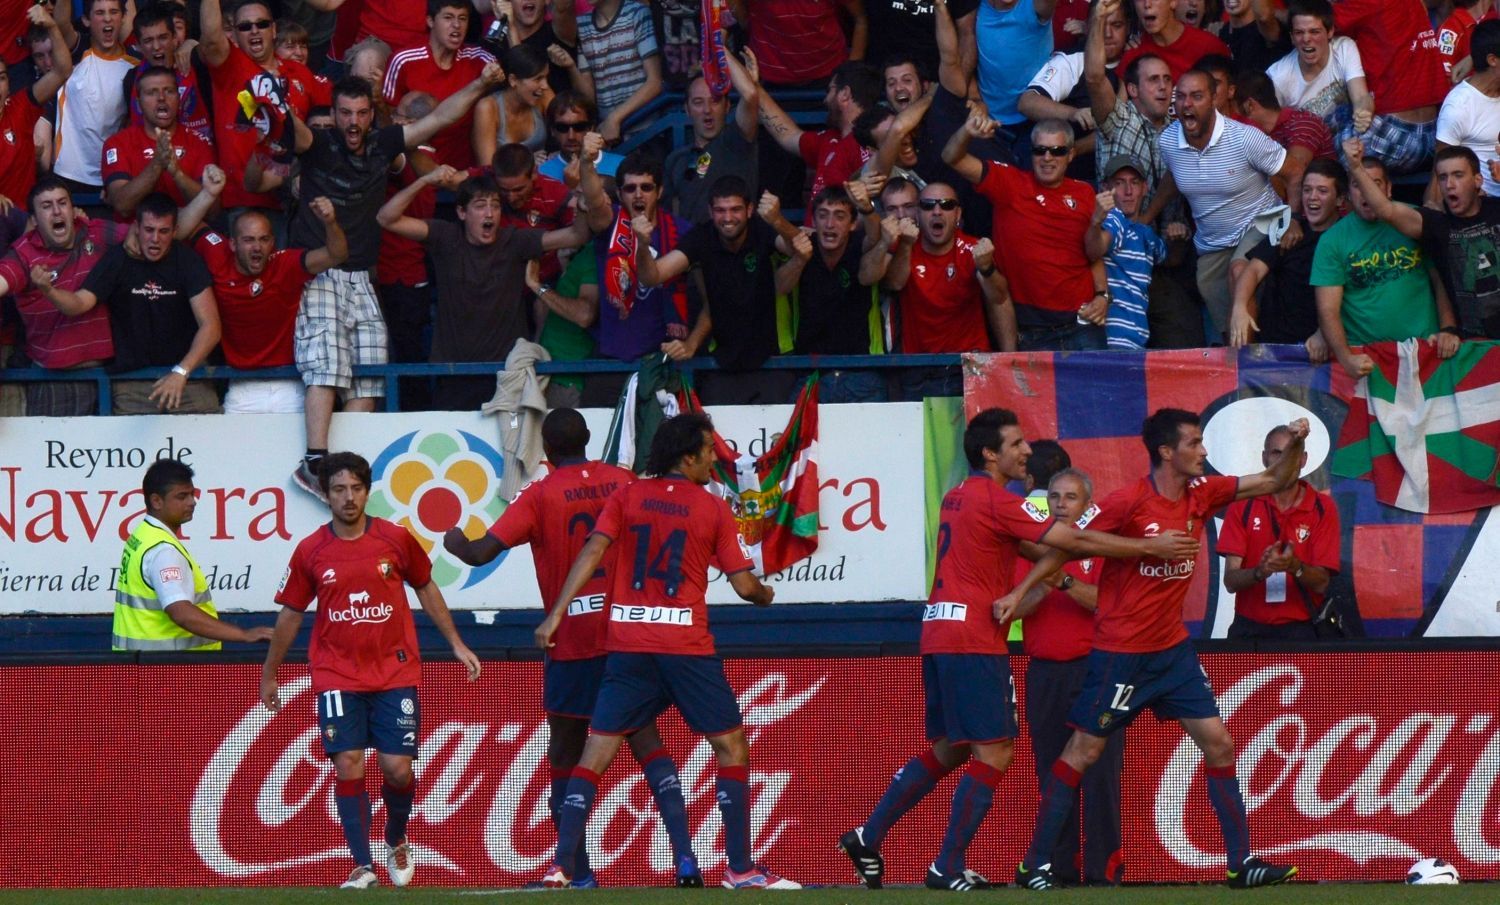 Fotbalisté Osasuny slaví gól v utkání La Ligy 2012/13 s Barcelonou.